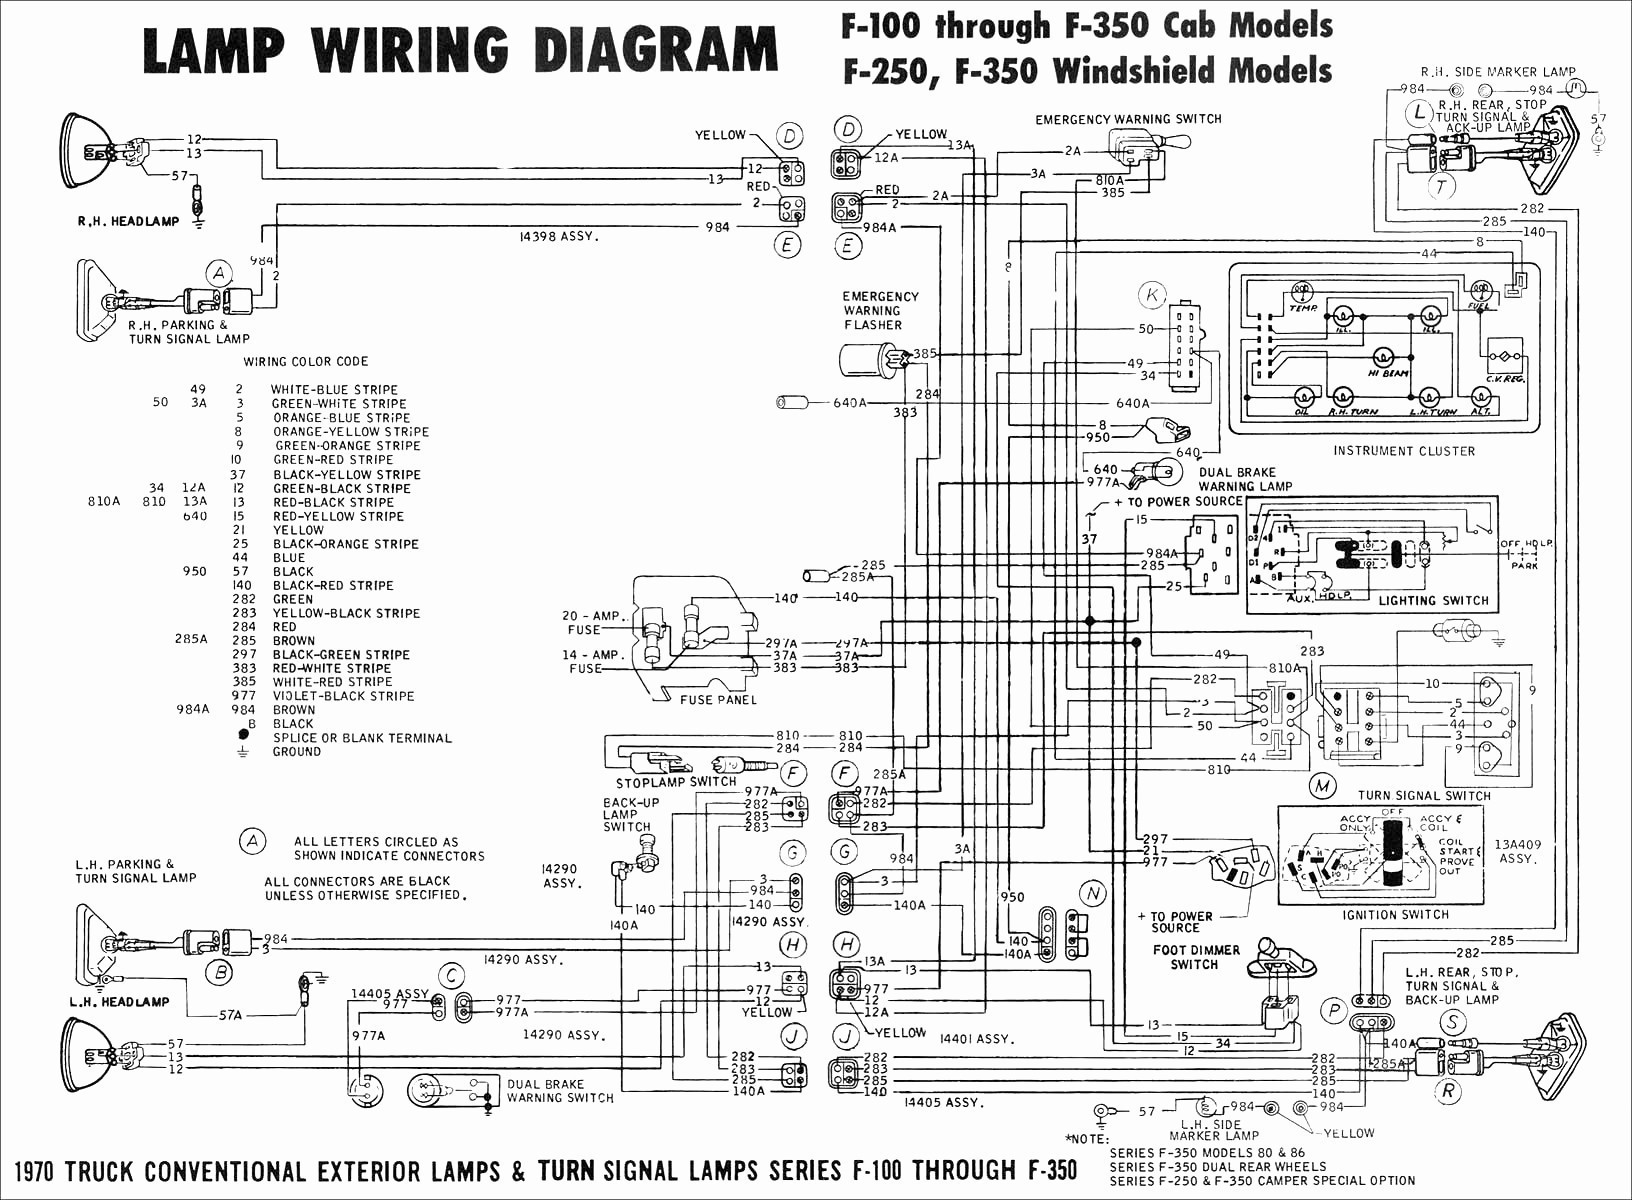 Ford 5 4 Engine Diagram 86 F150 4 9l Wiring Diagram Wiring Diagram toolbox Of Ford 5 4 Engine Diagram